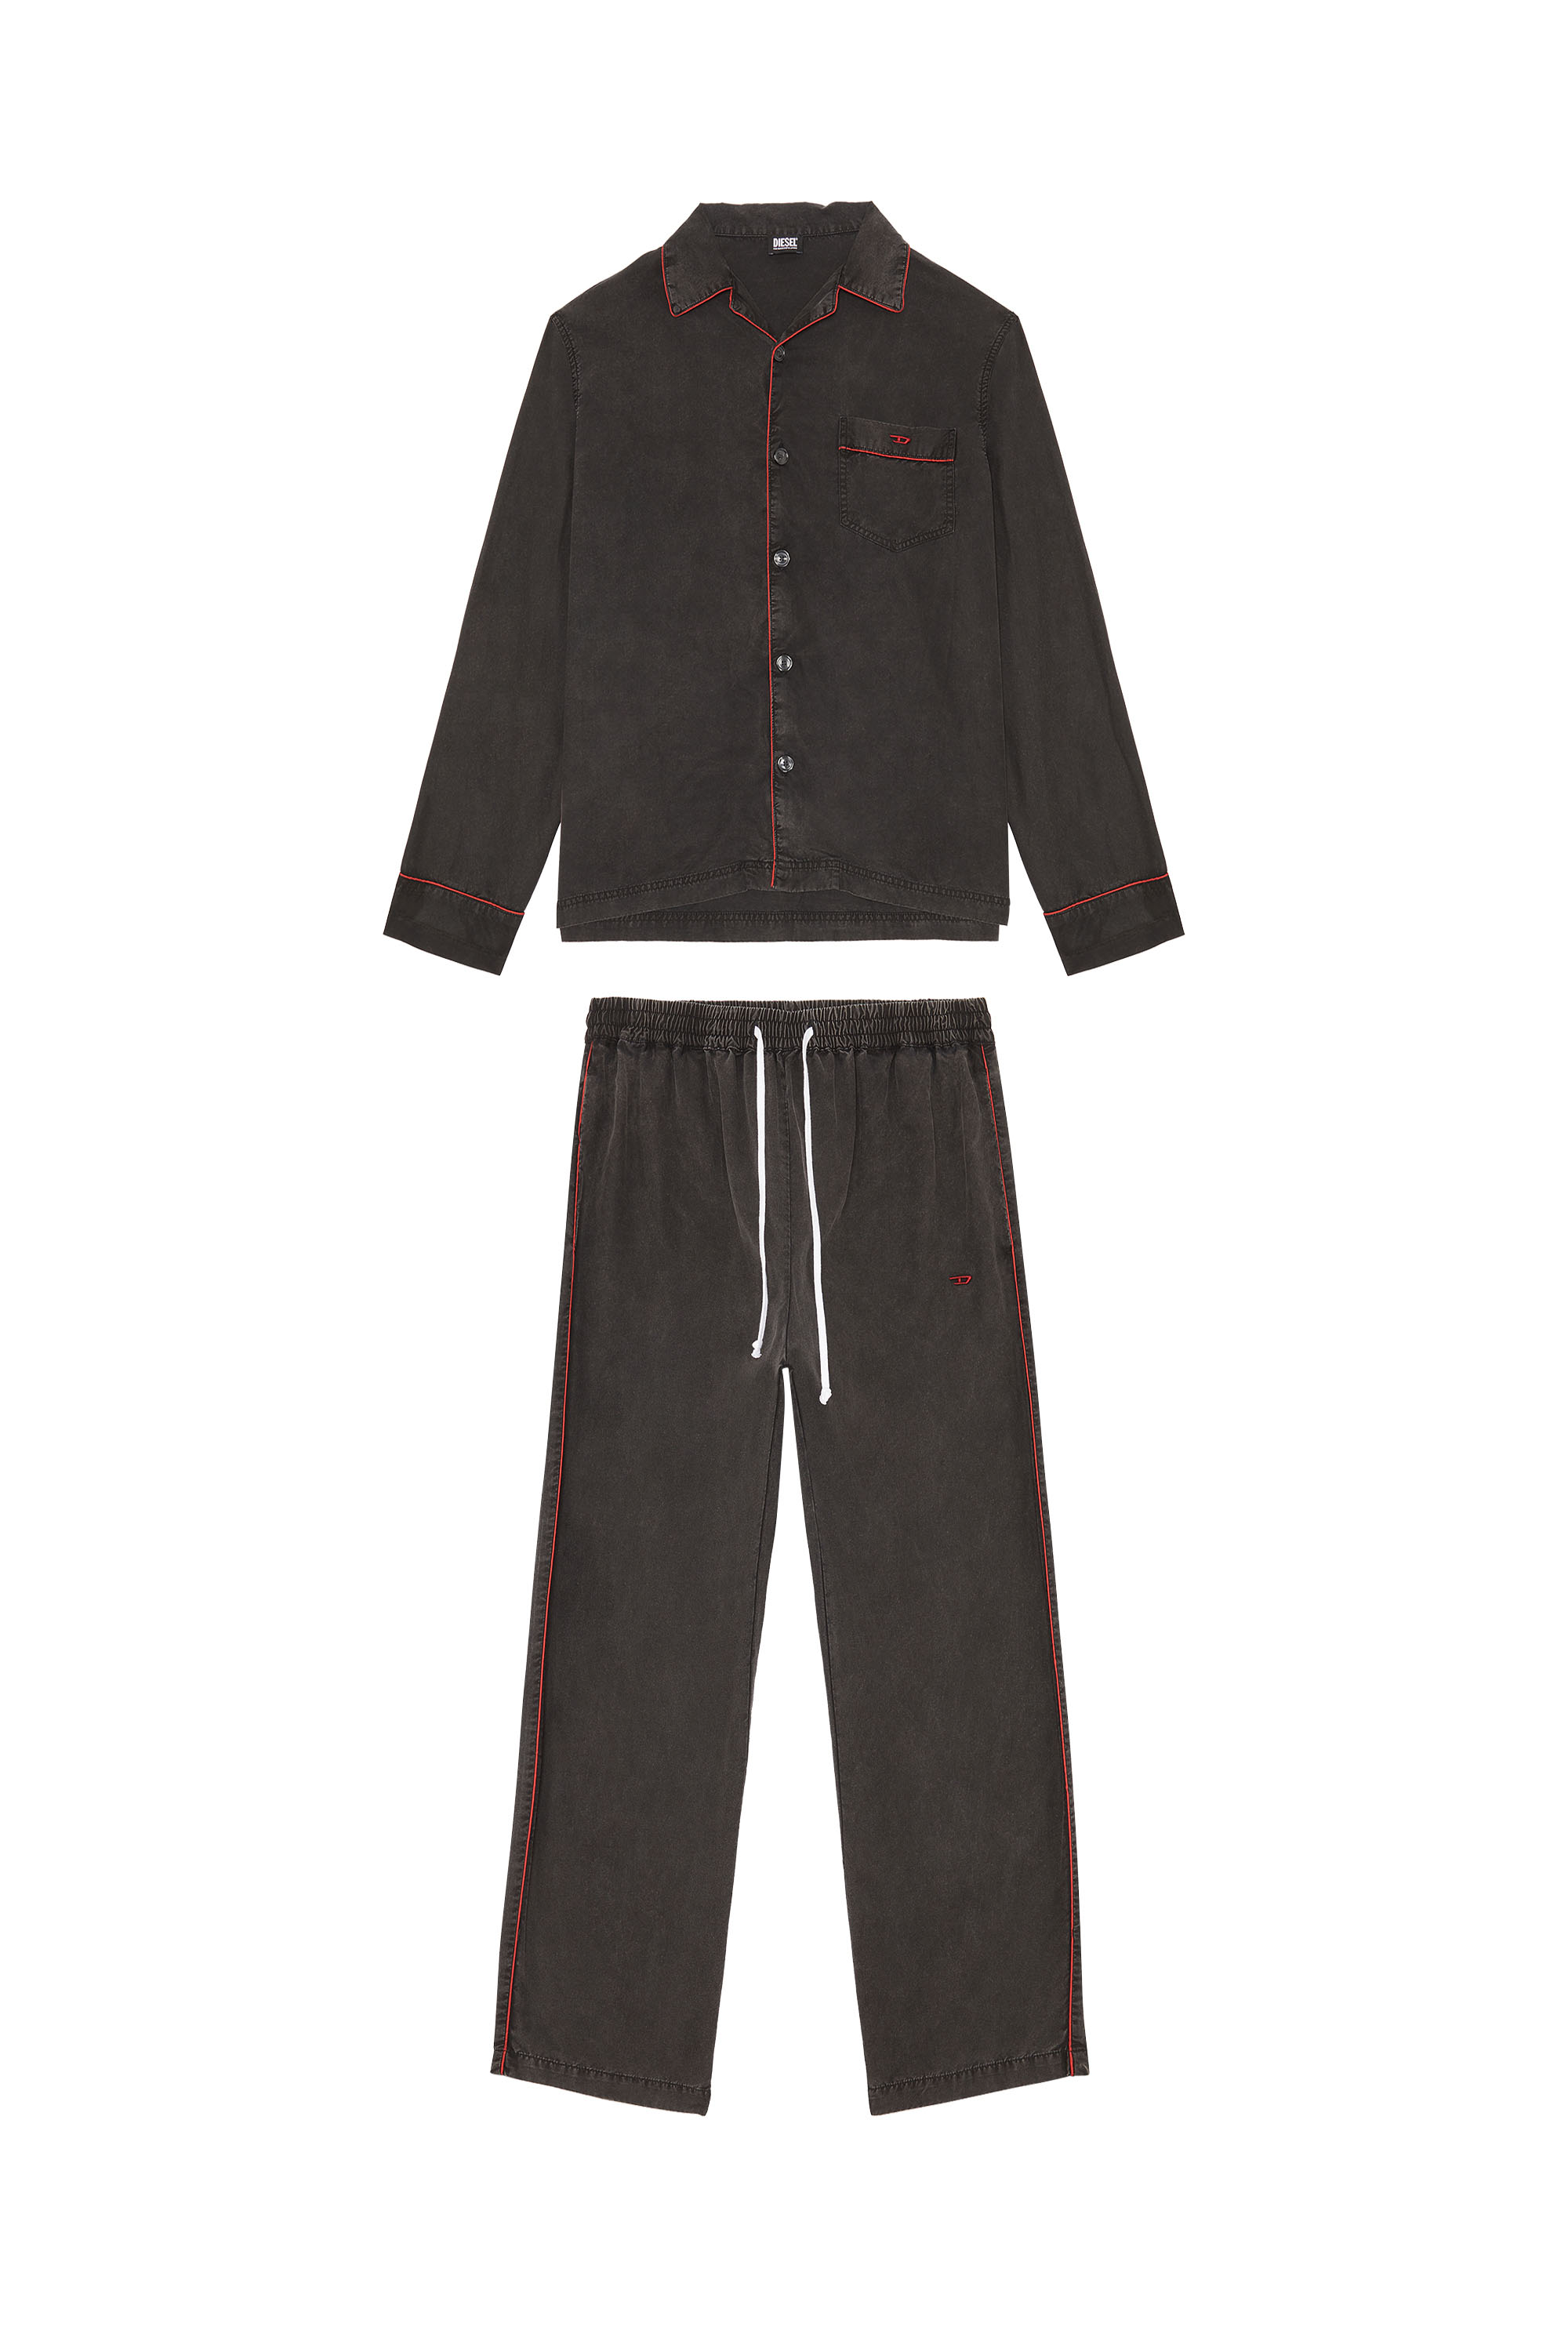 Diesel - Pijama largo con ribetes en contraste - Pijamas - Hombre - Negro